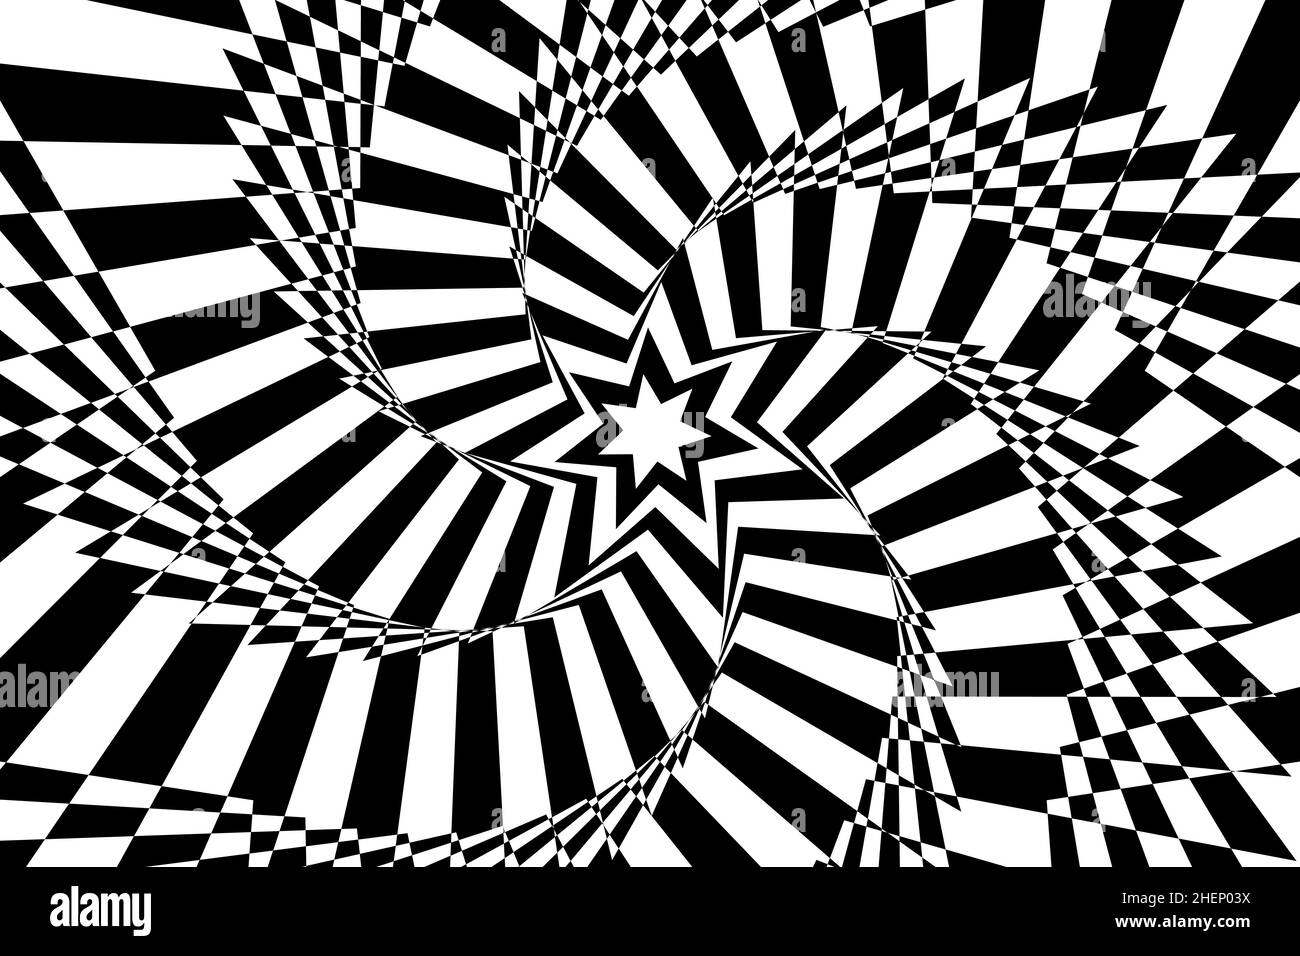 Resumen de fondo de ilusión óptica con una estrella. Blanco y negro. Vector. Ilustración del Vector